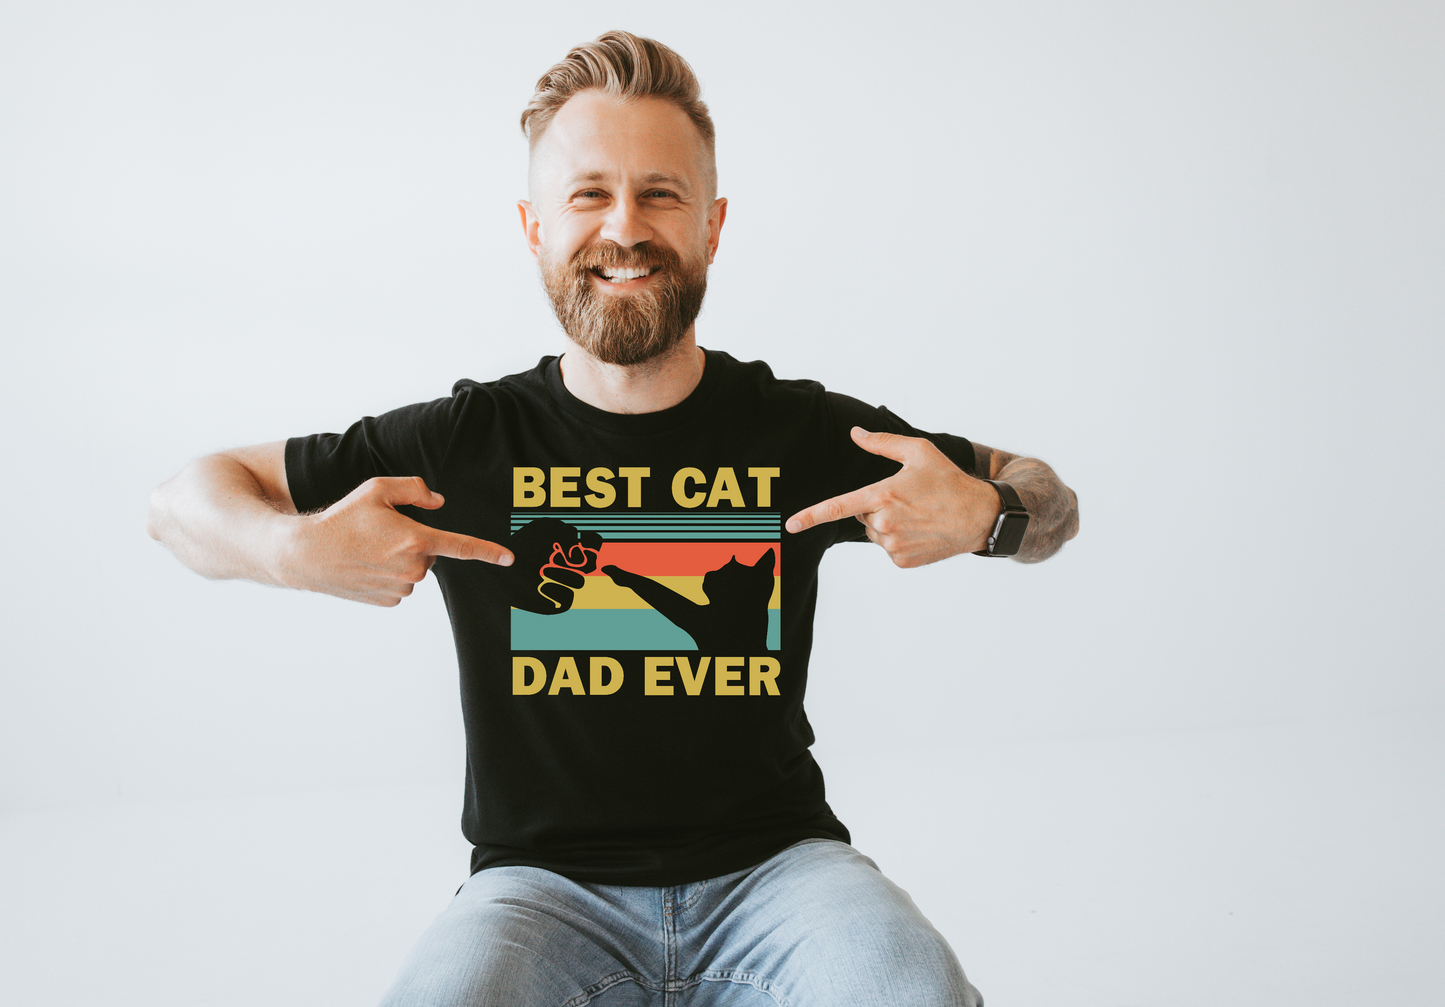 Best cat dad ever!